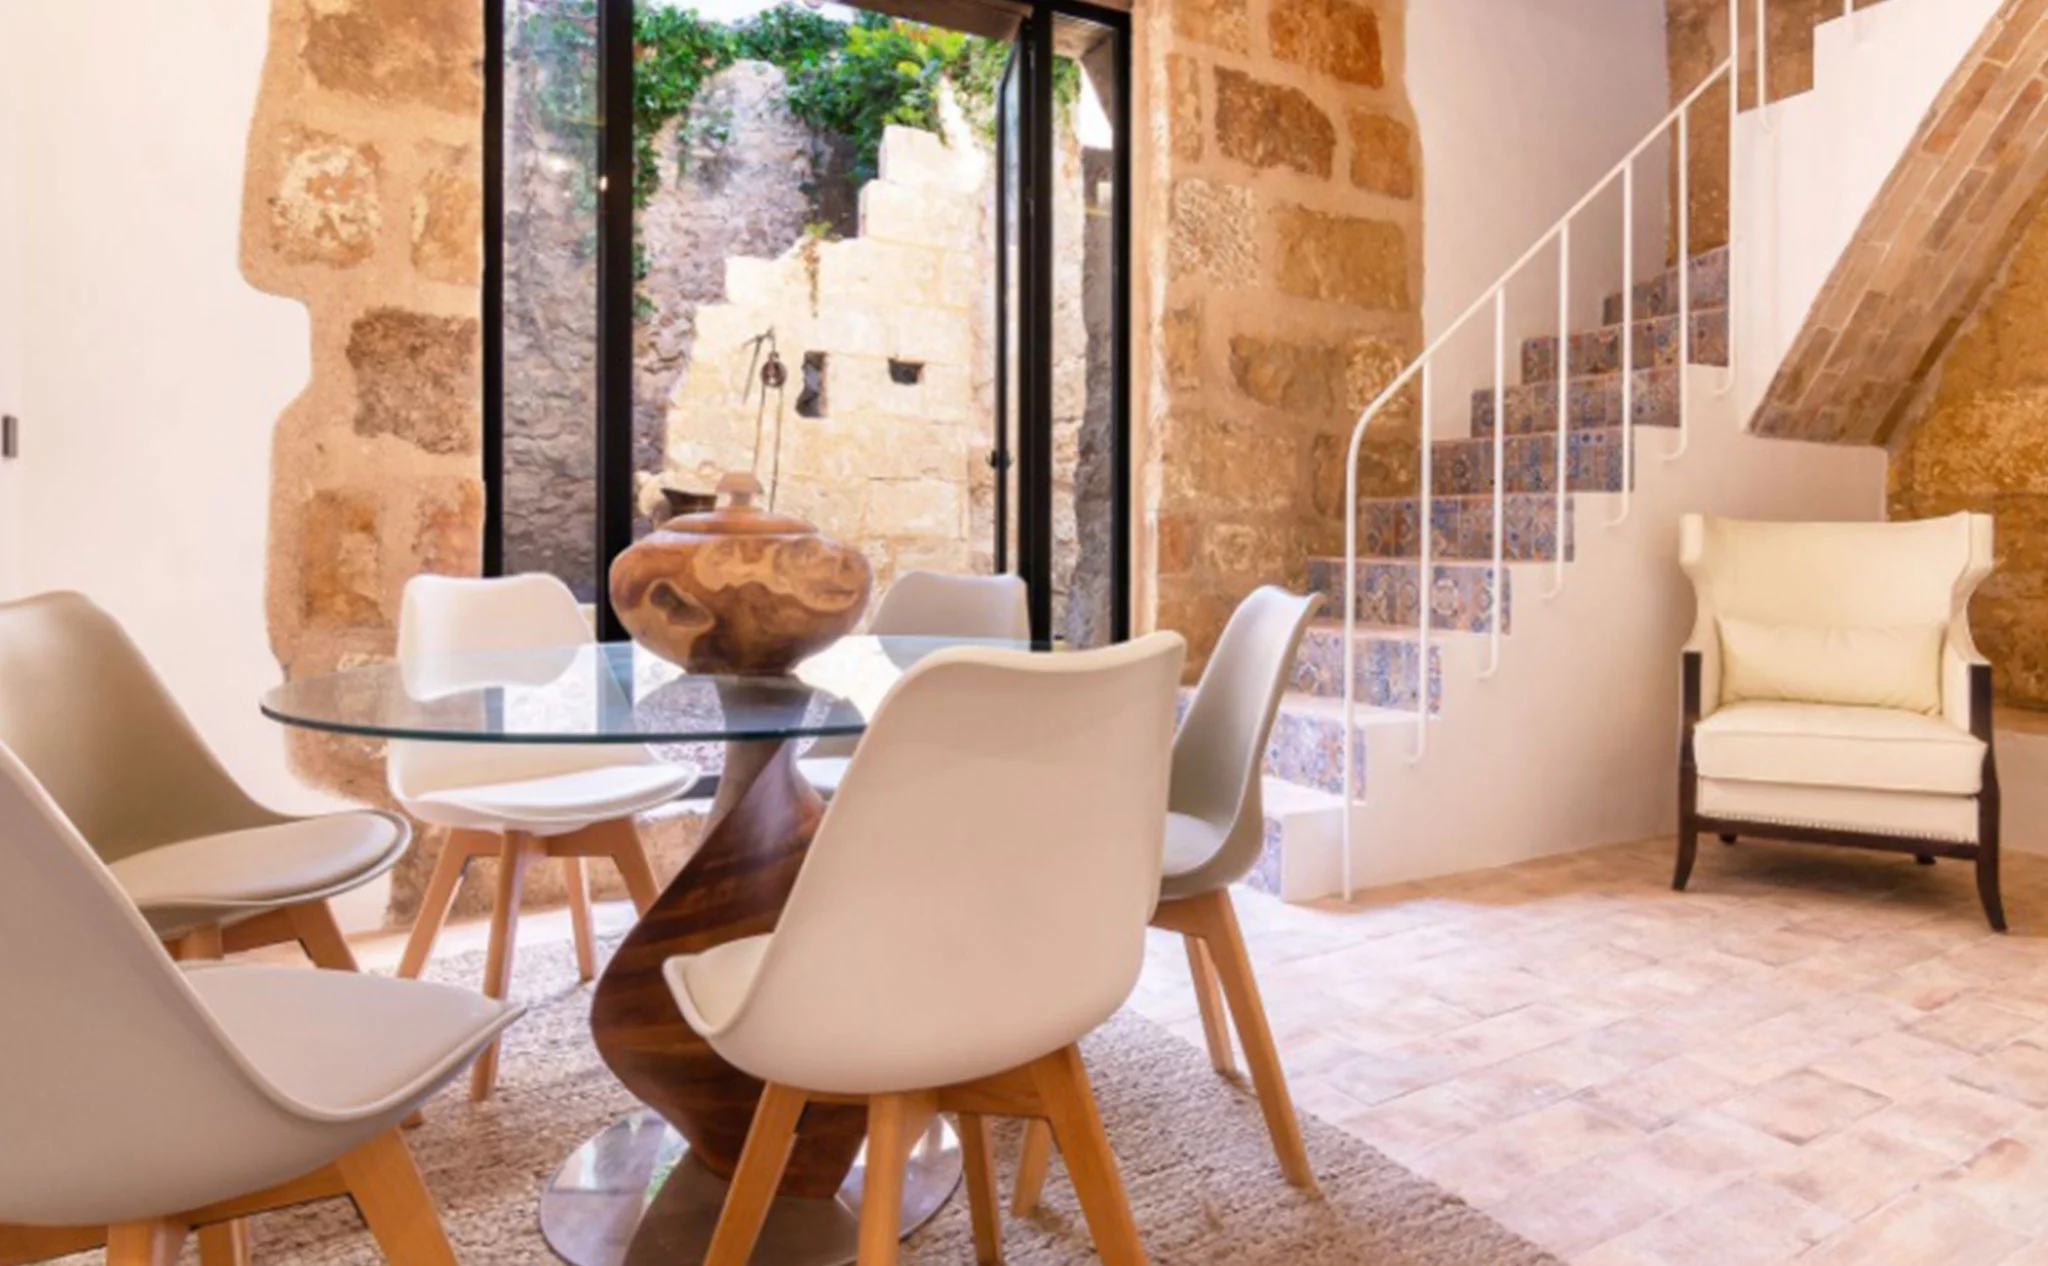 Escaleras en una casa de pueblo en venta en el centro de Xàbia – MORAGUESPONS Mediterranean Houses